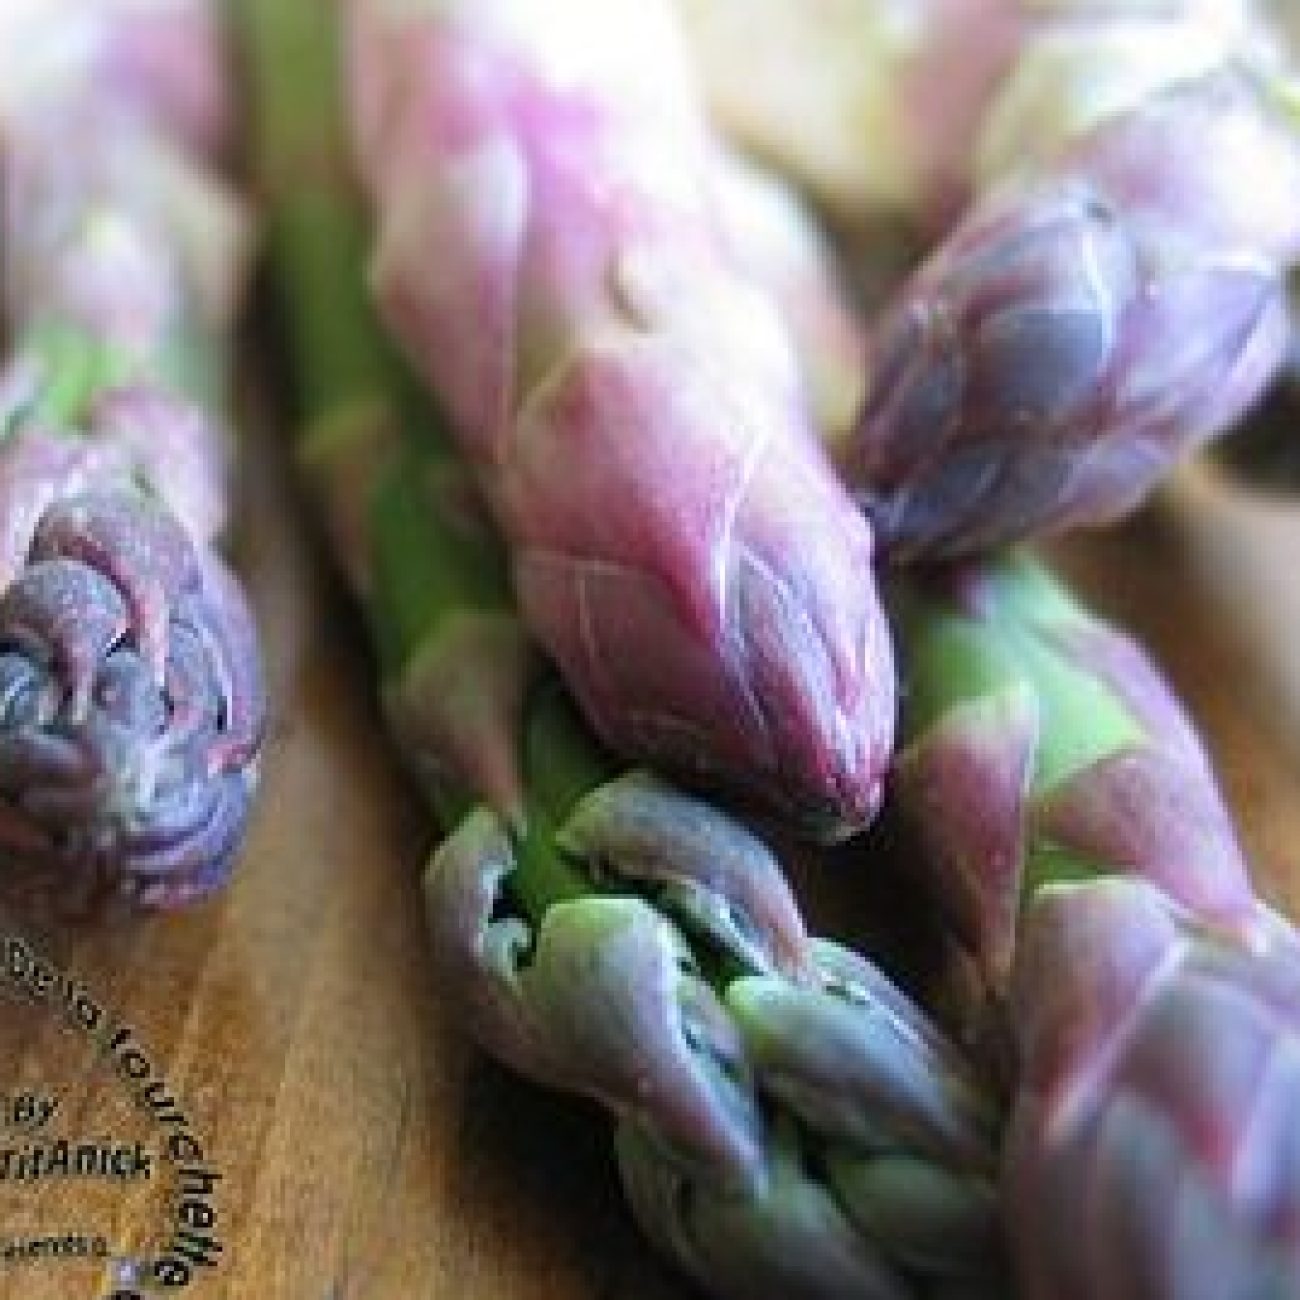 Asperge Violette: Violet Asparagus With